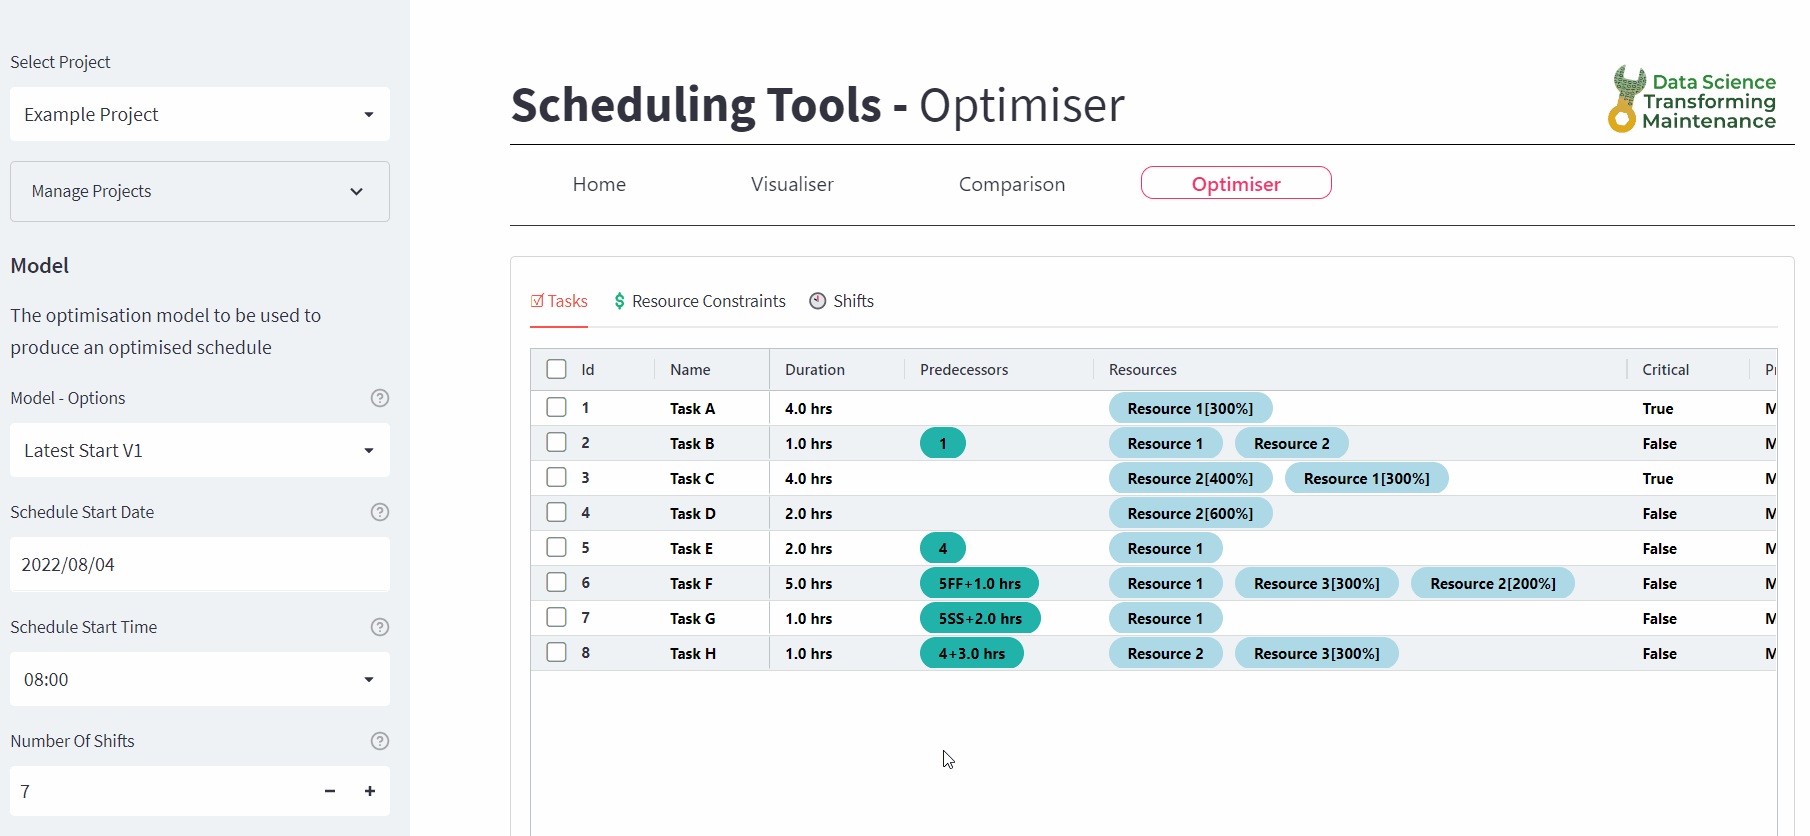 The schedule optimiser tool